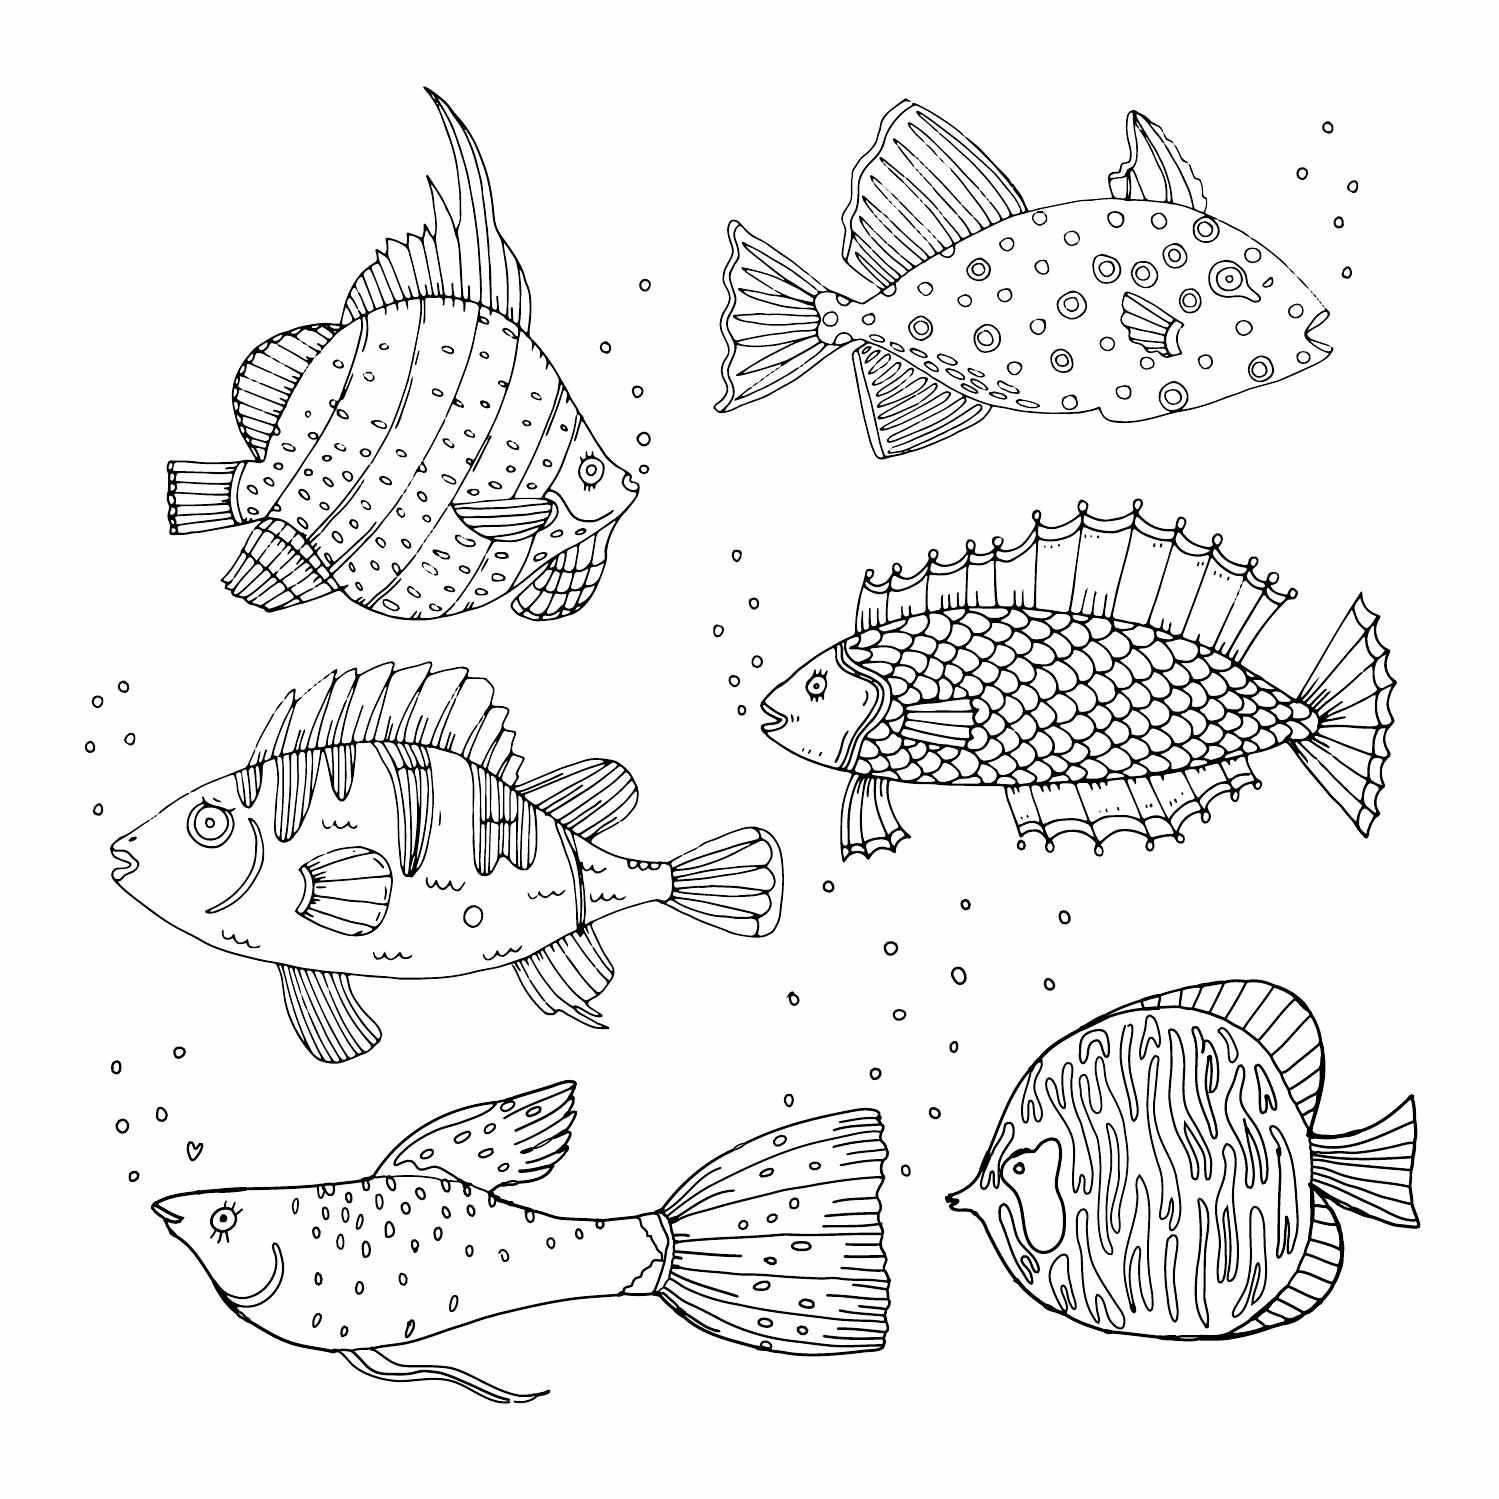 Распечатать раскраски морских рыб. Раскраска для детей морских и океанских рыб